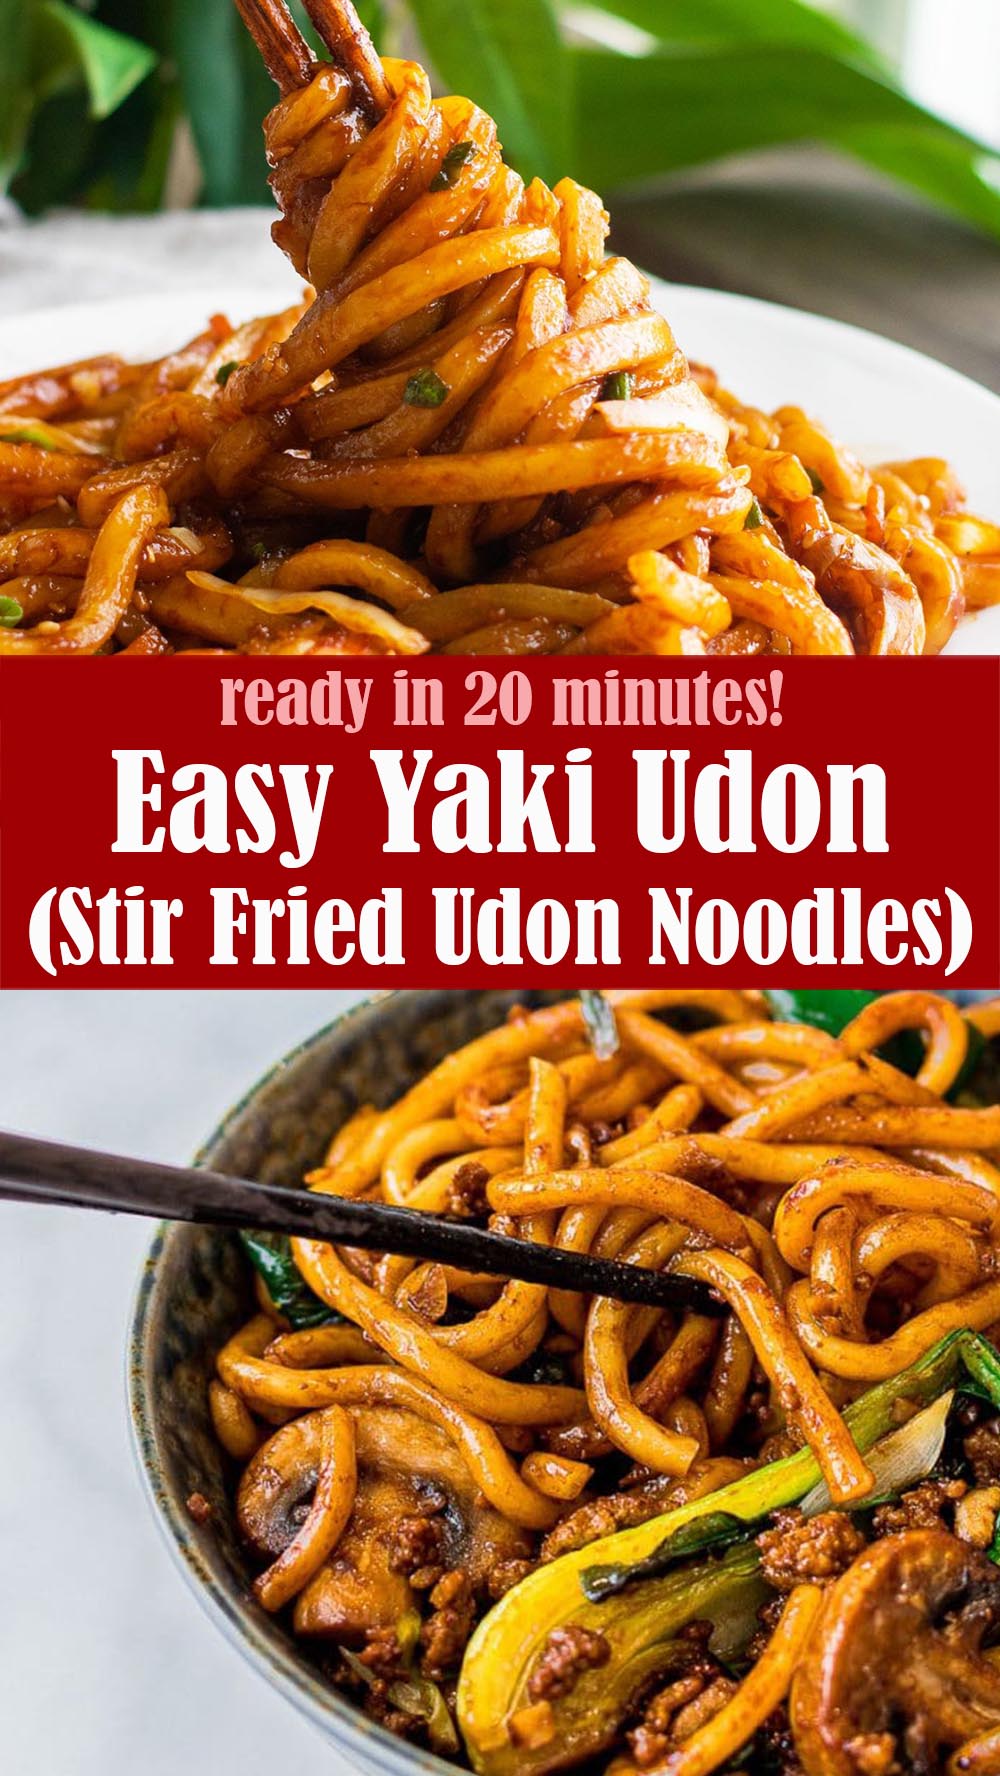 Easy Yaki Udon (Stir Fried Udon Noodles)